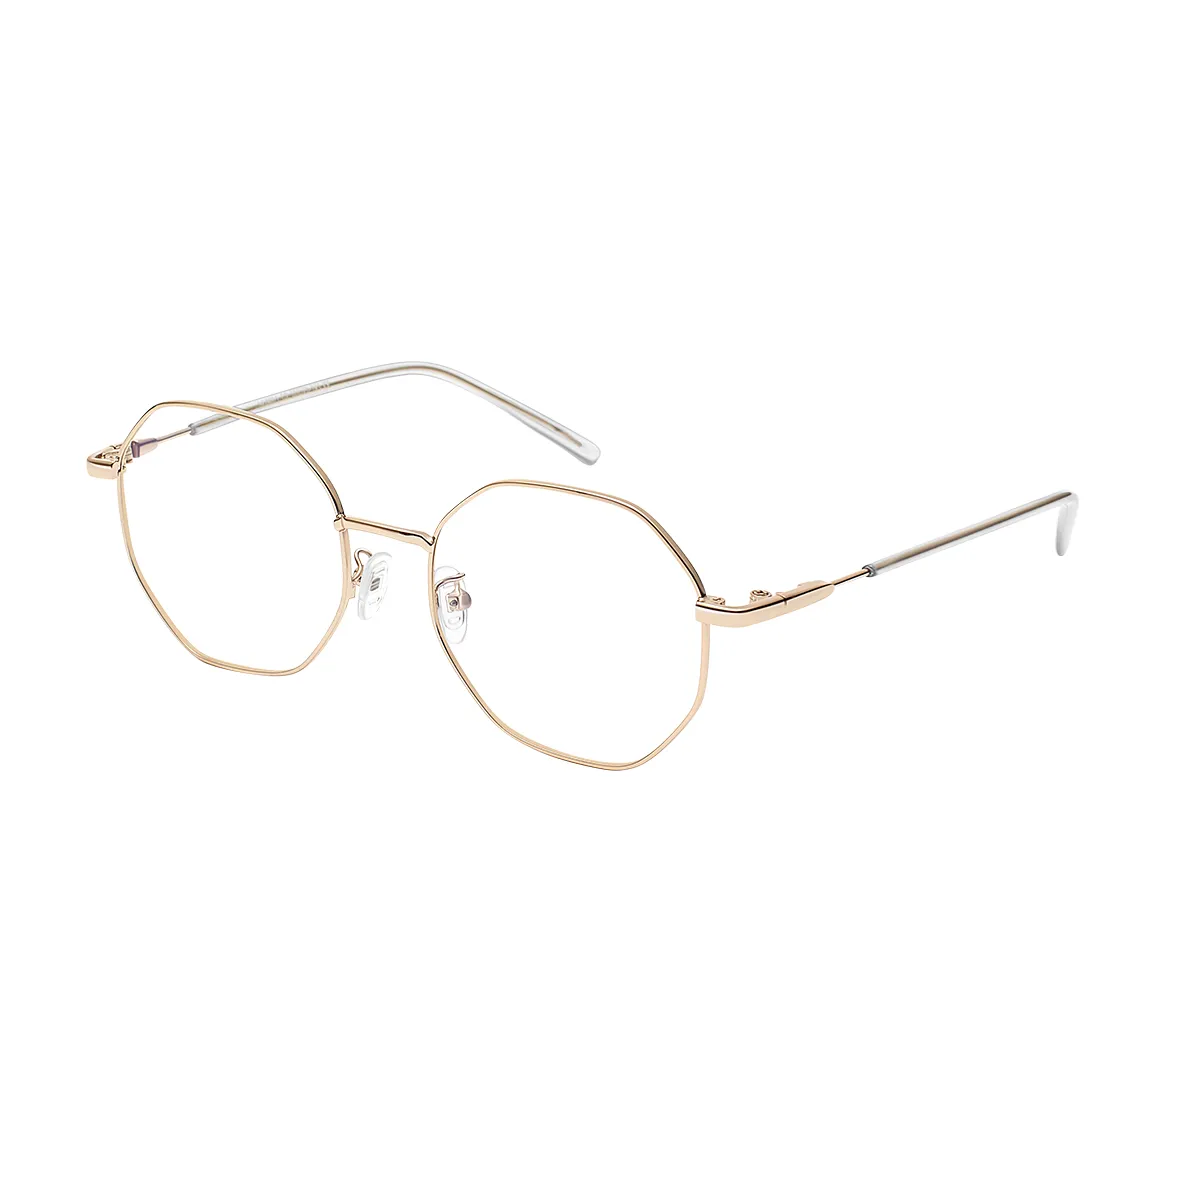 Jule - Geometric Gold Glasses for Men & Women